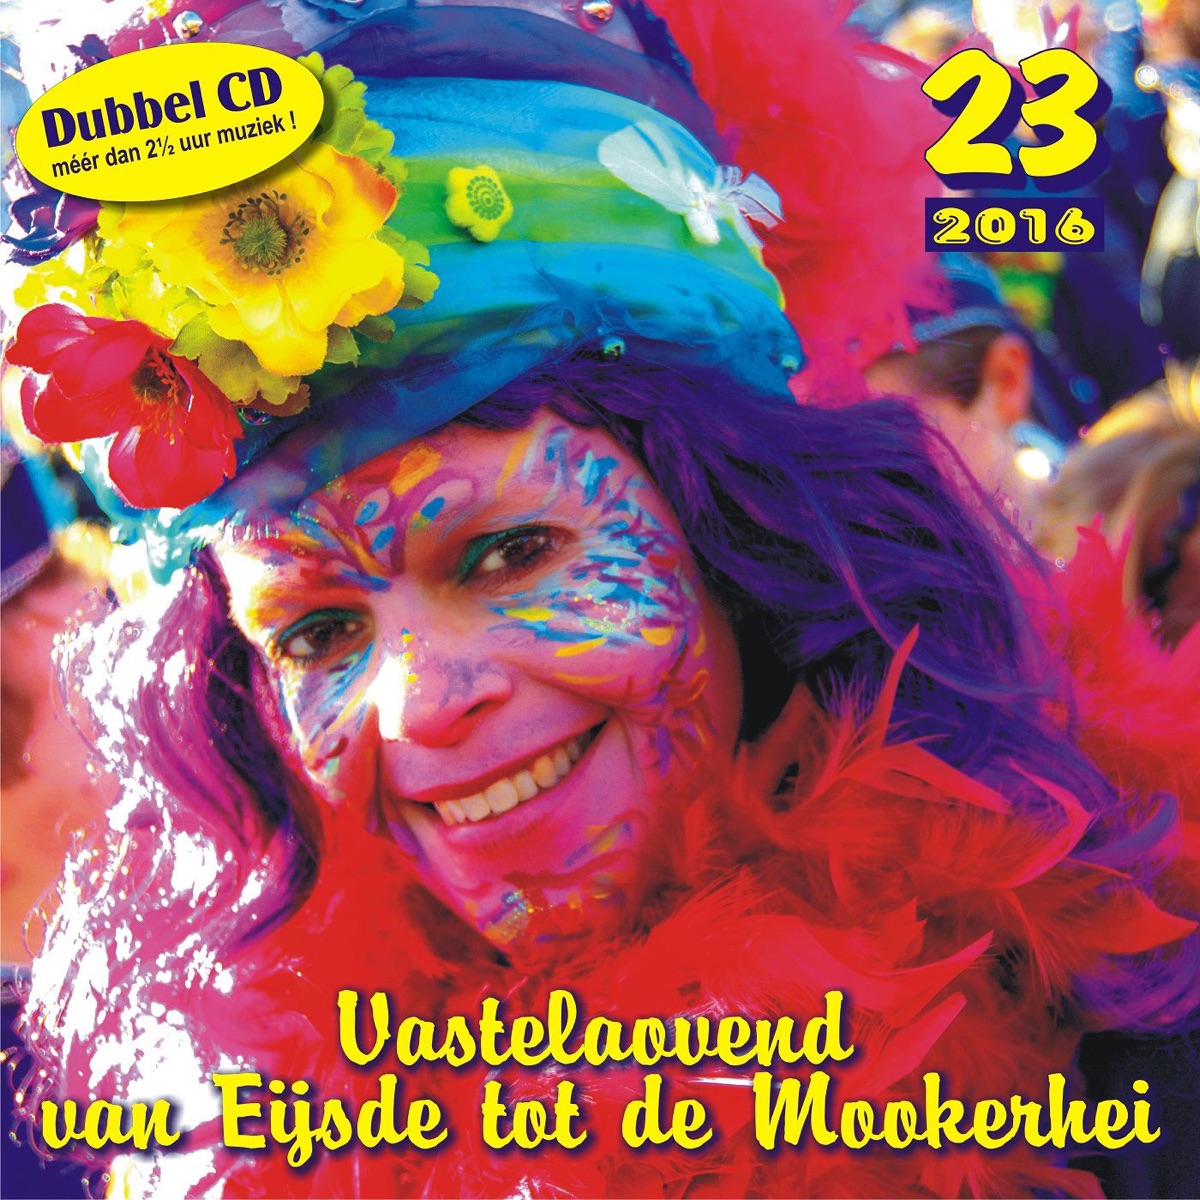 Vastelaovend van Eijsde tot de Mookerhei 23 Album Cover by Diverse ...